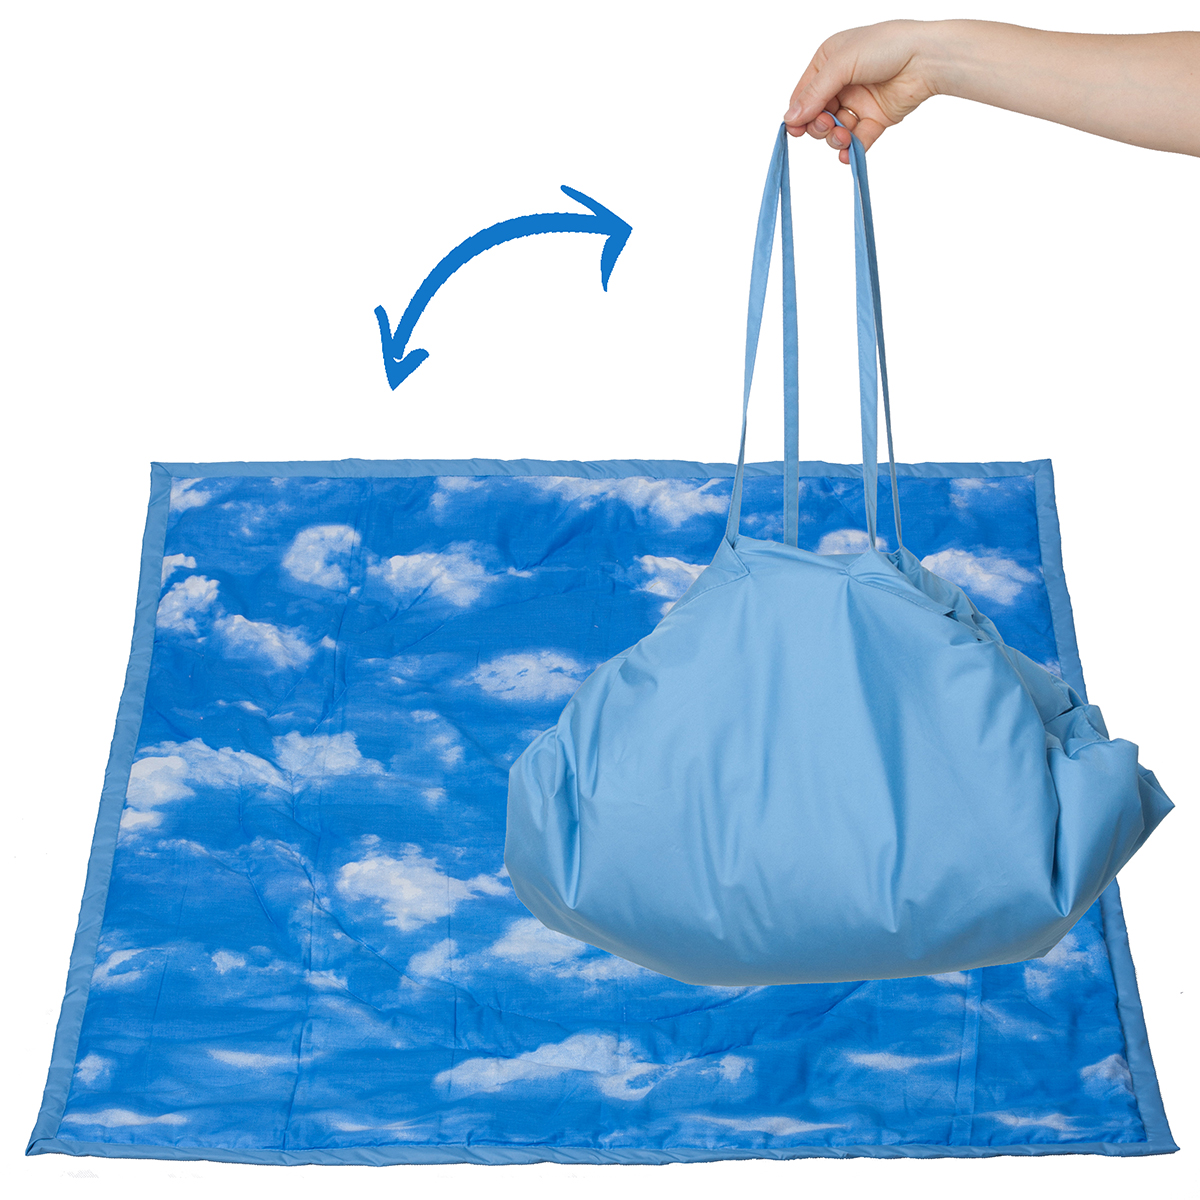 фото Сумка для мамы Чудо-чадо Коврик Переносной коврик-сумка, KTR02-020, голубой